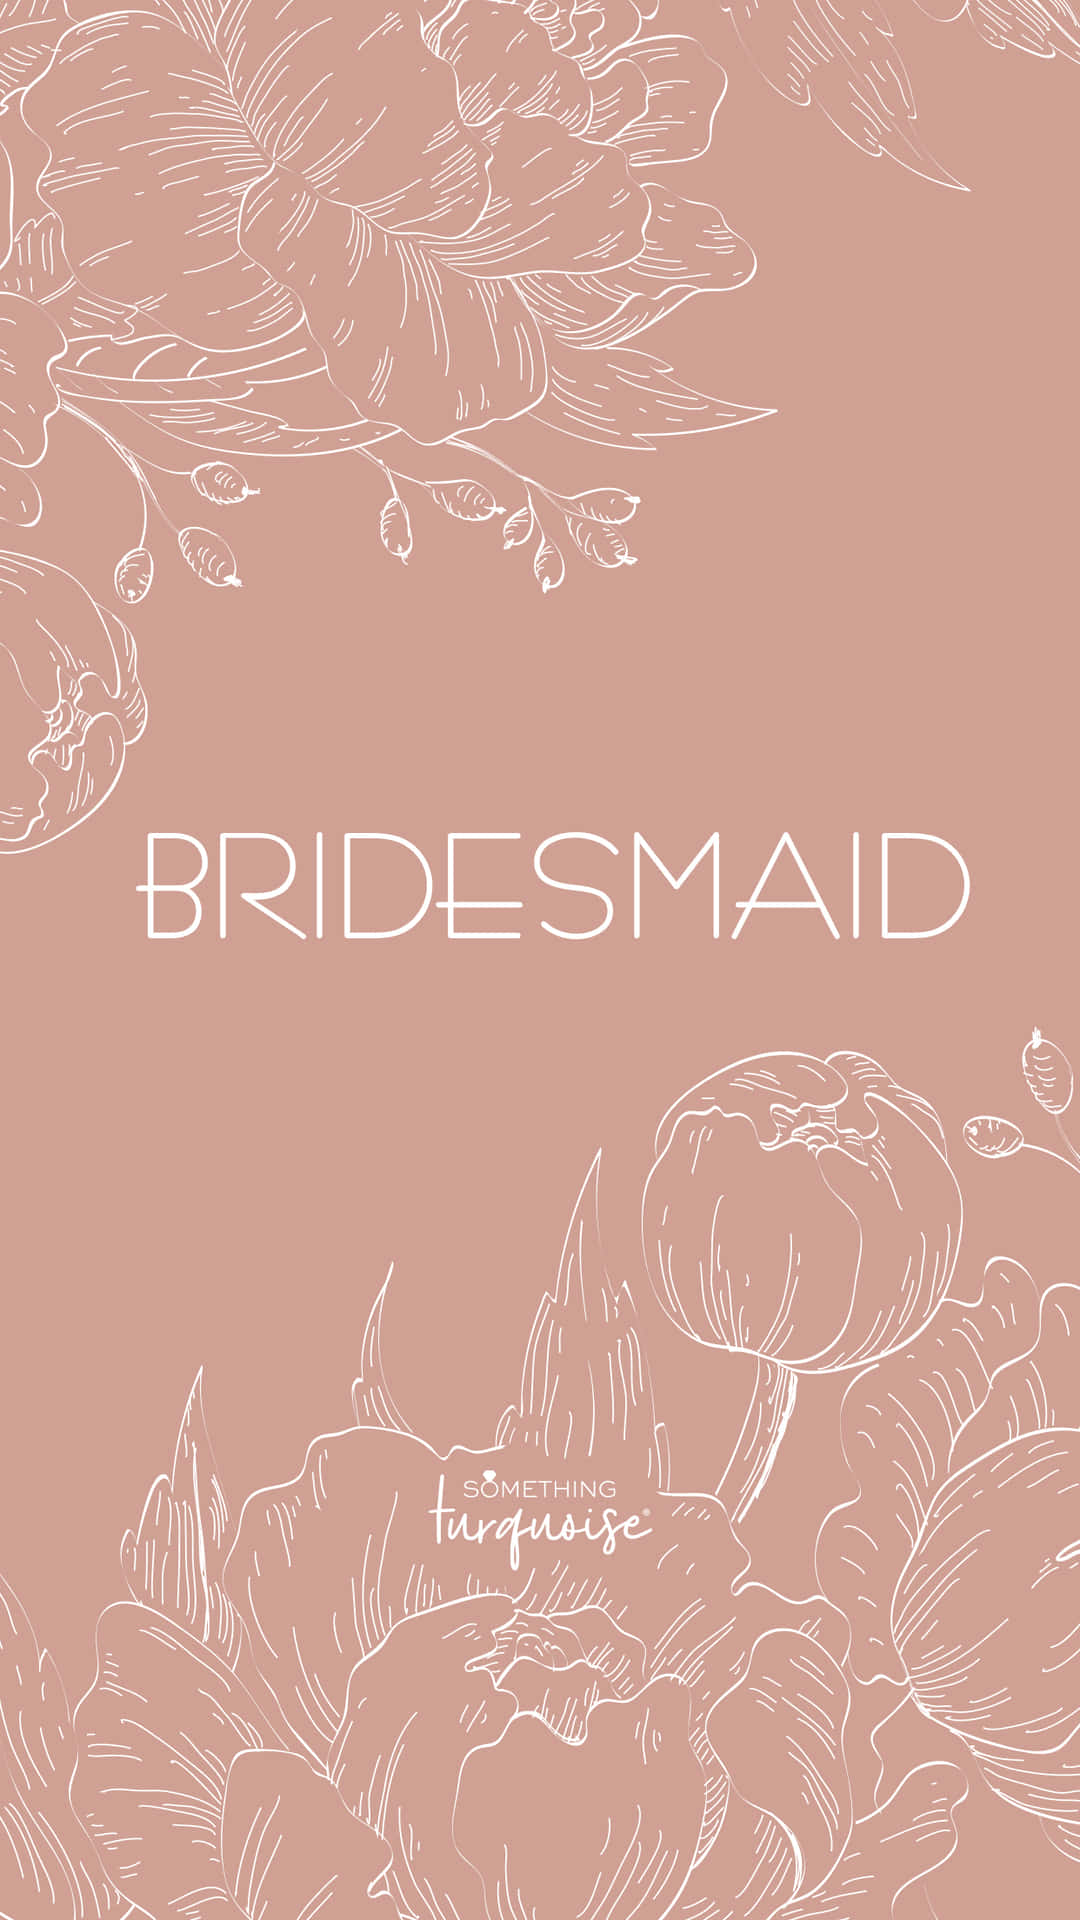 Bridesmaids Invitation Card Picture